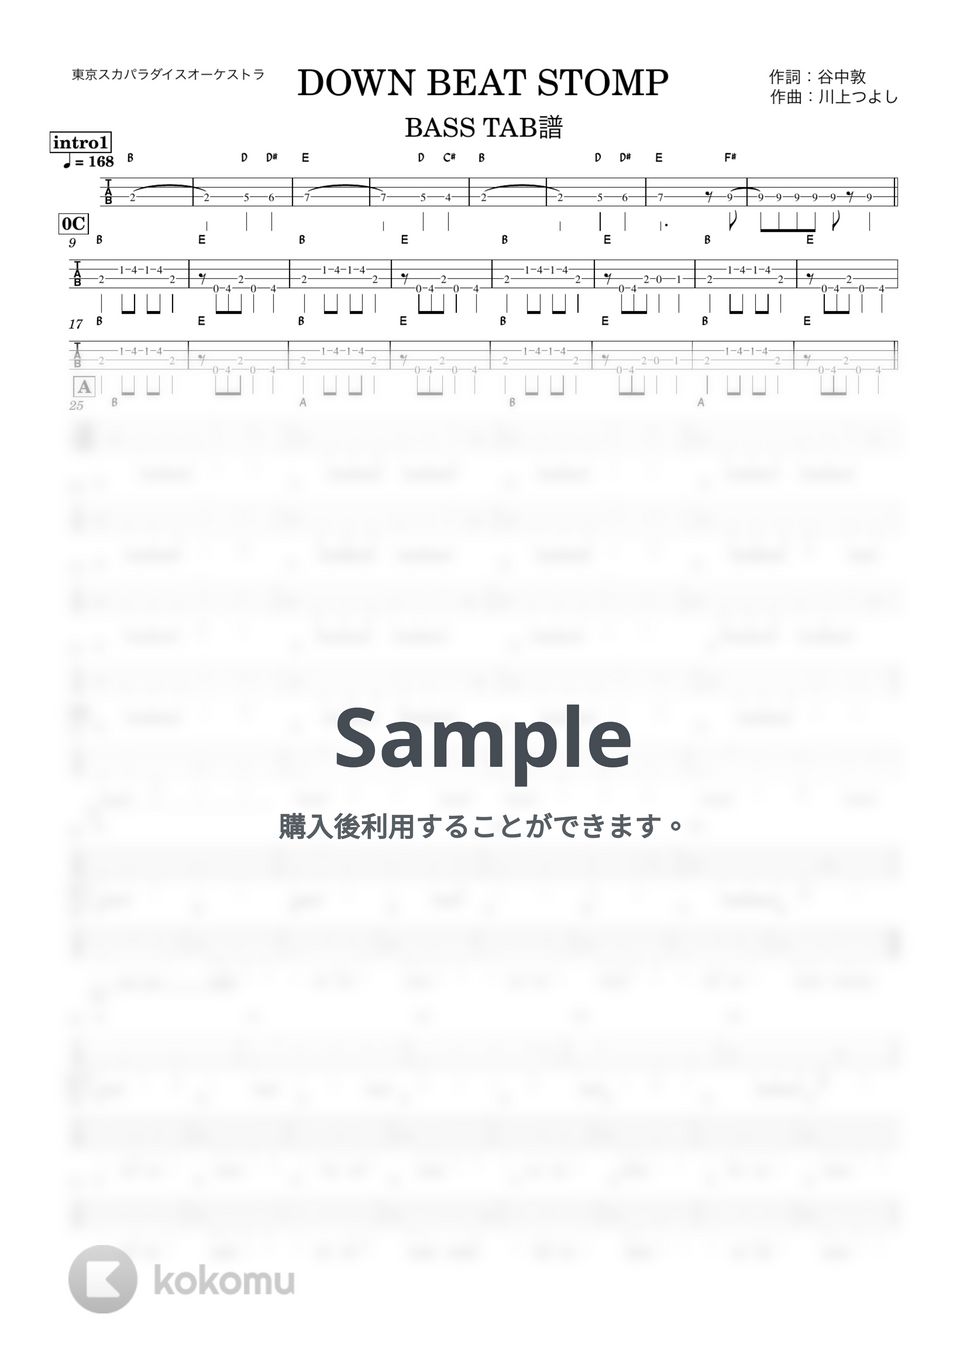 東京スカパラダイスオーケストラ - DOWN BEAT STOMP (『ベースTAB譜』4弦ベース対応) by 箱譜屋